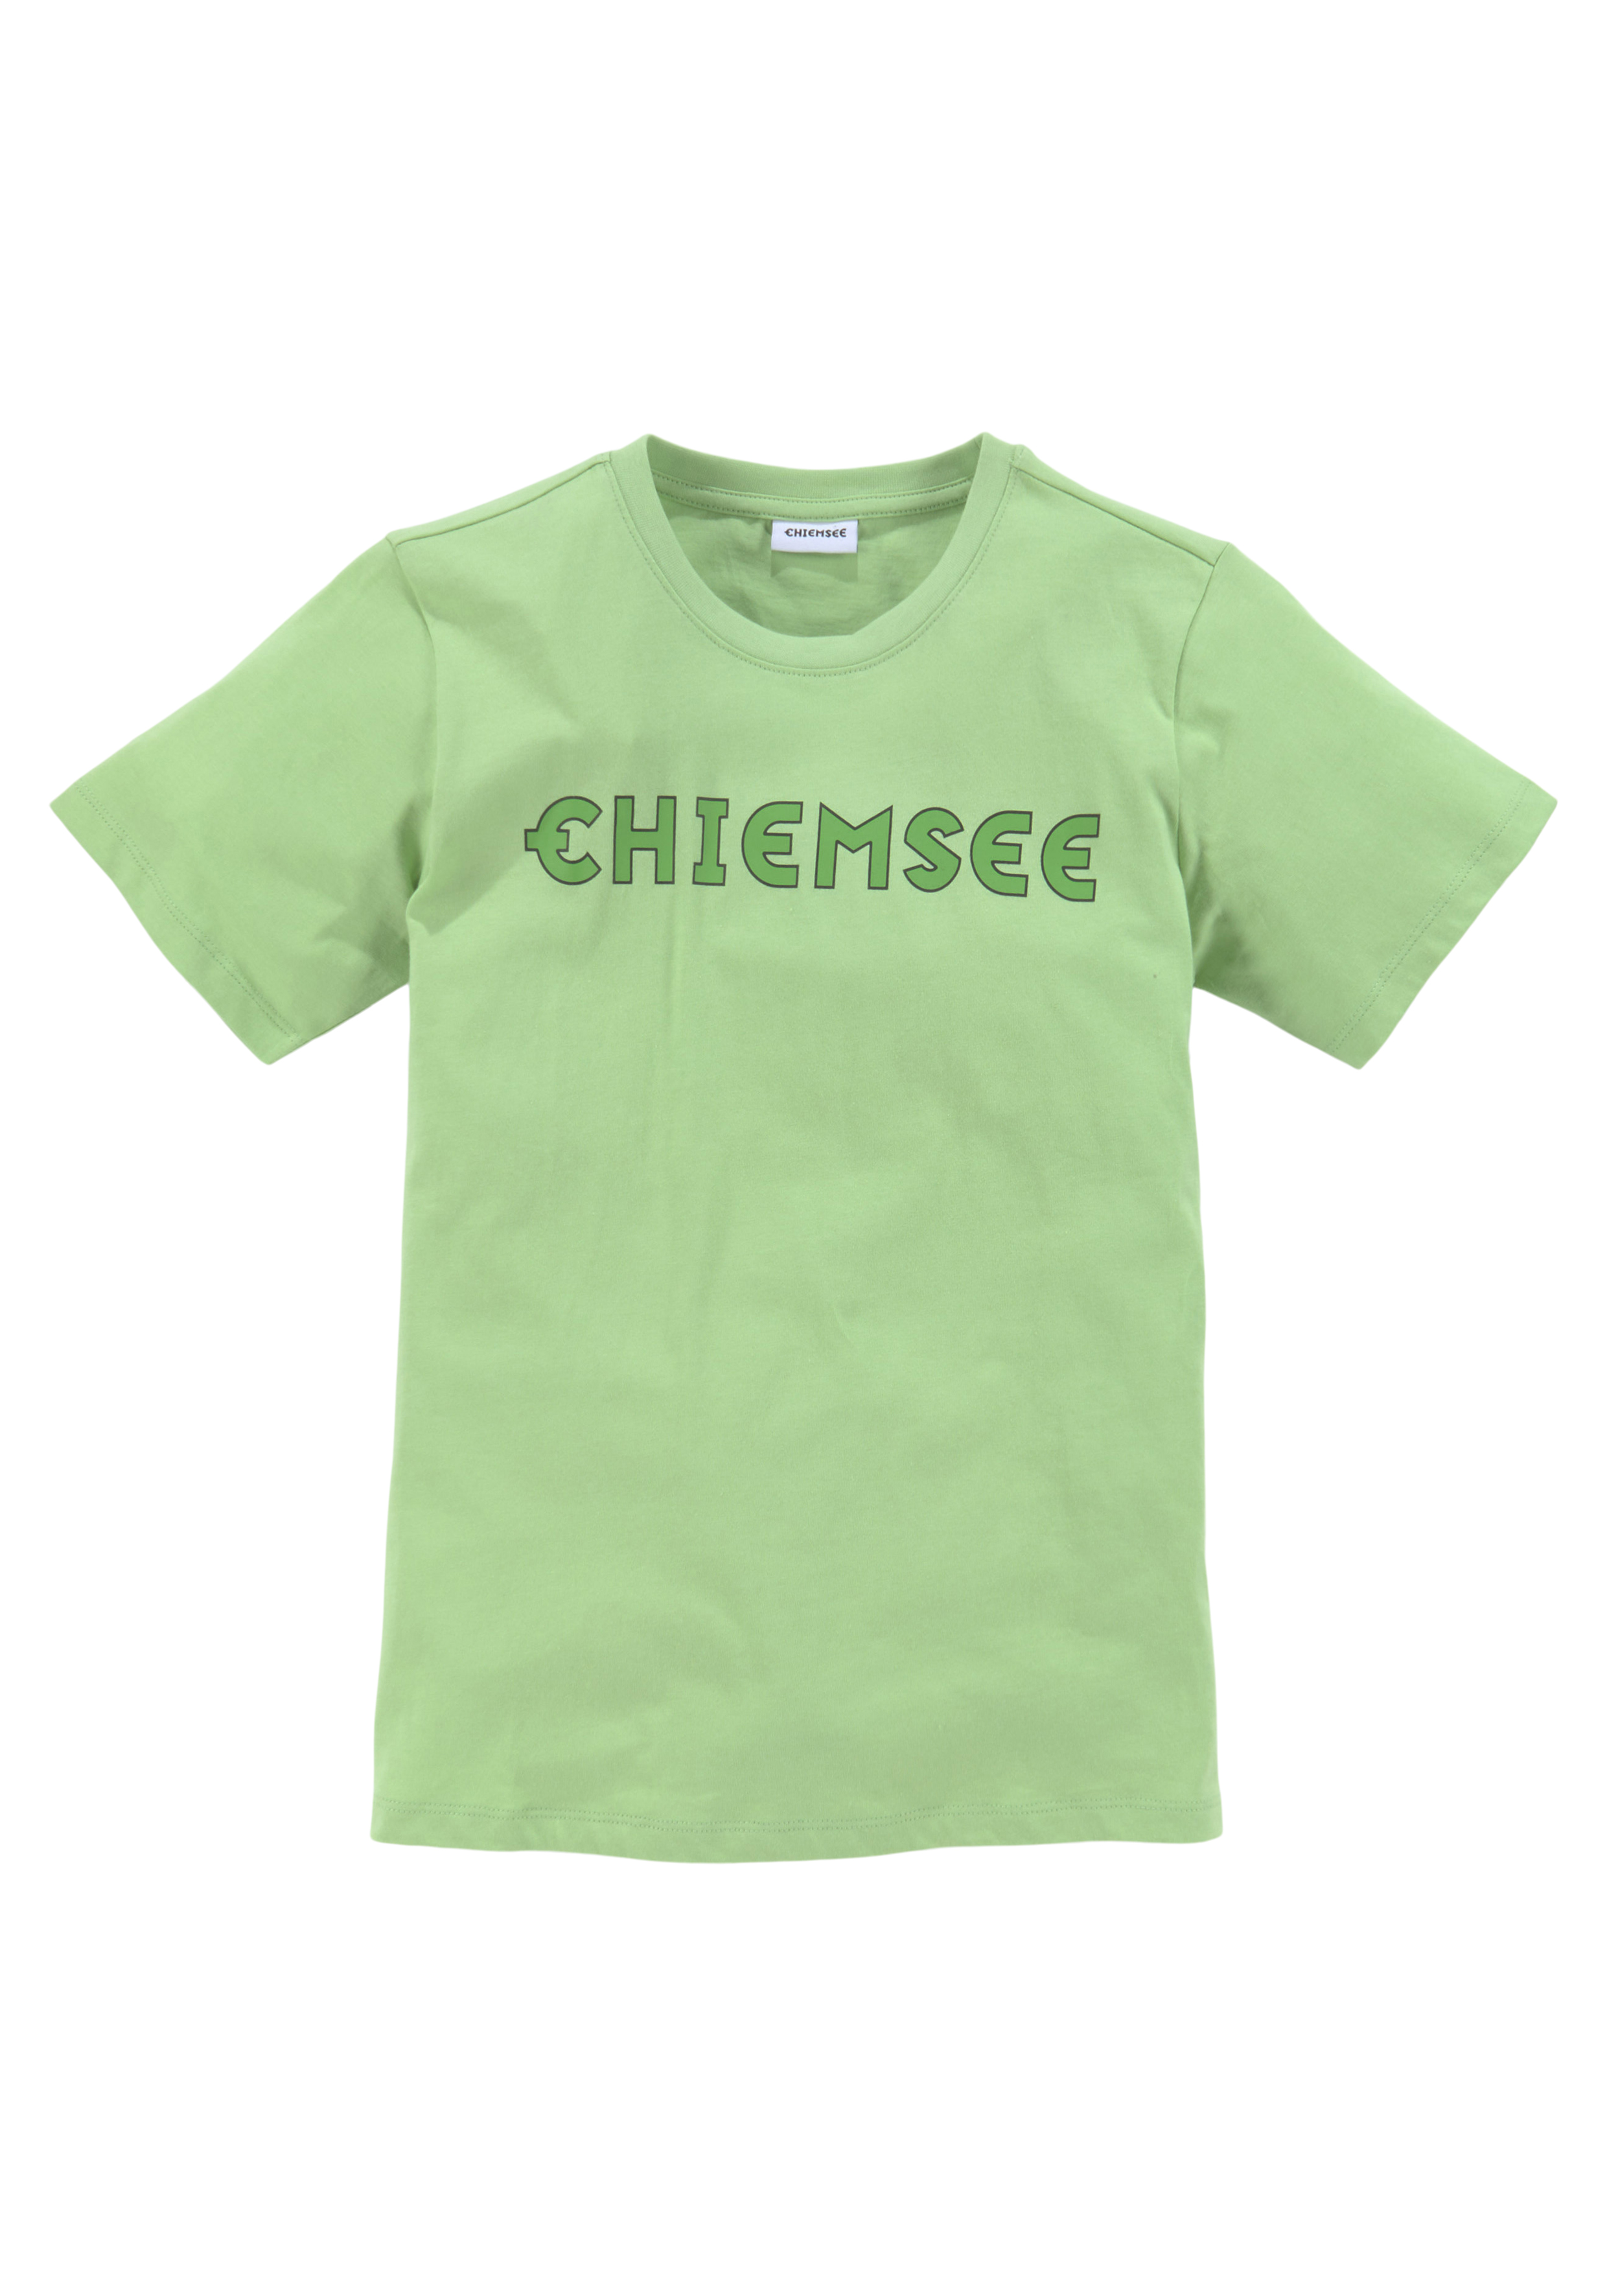 Chiemsee - online günstige Mode shoppen